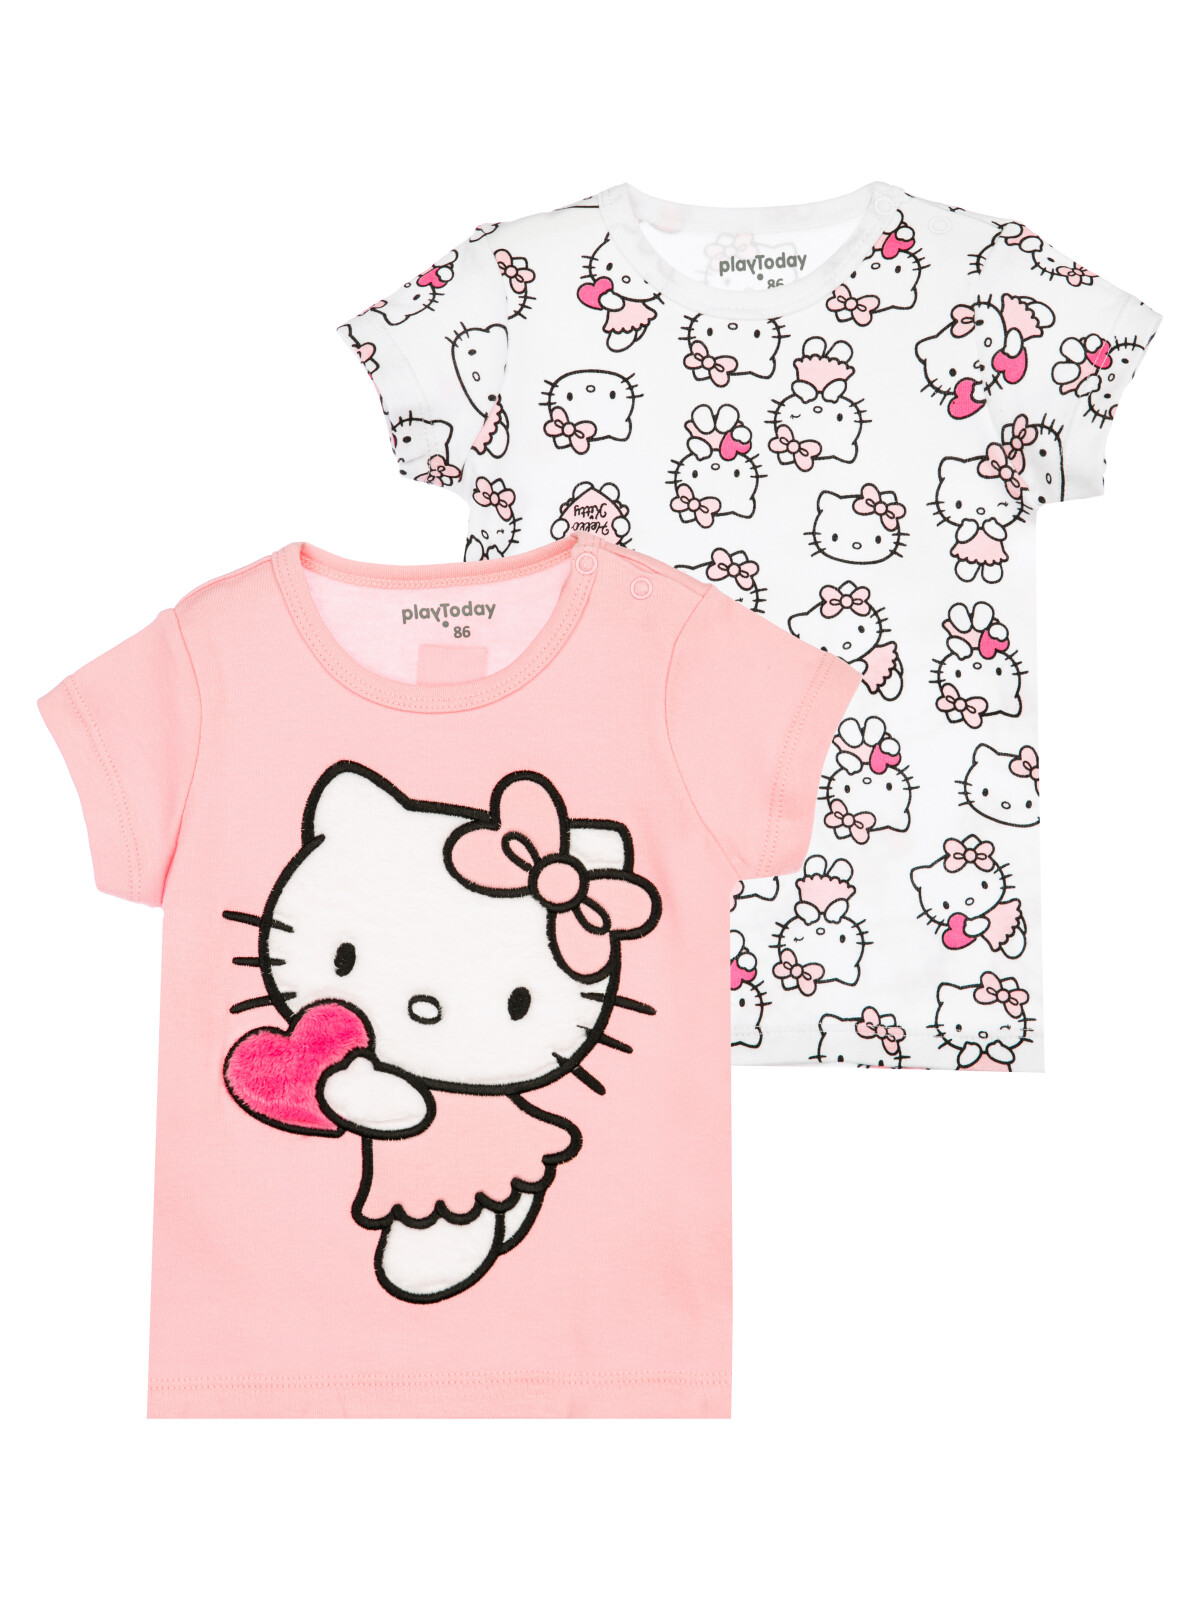 детская для девочек PlayToday (футболка), 2 шт в комплекте, белый,светло-розовый, 80